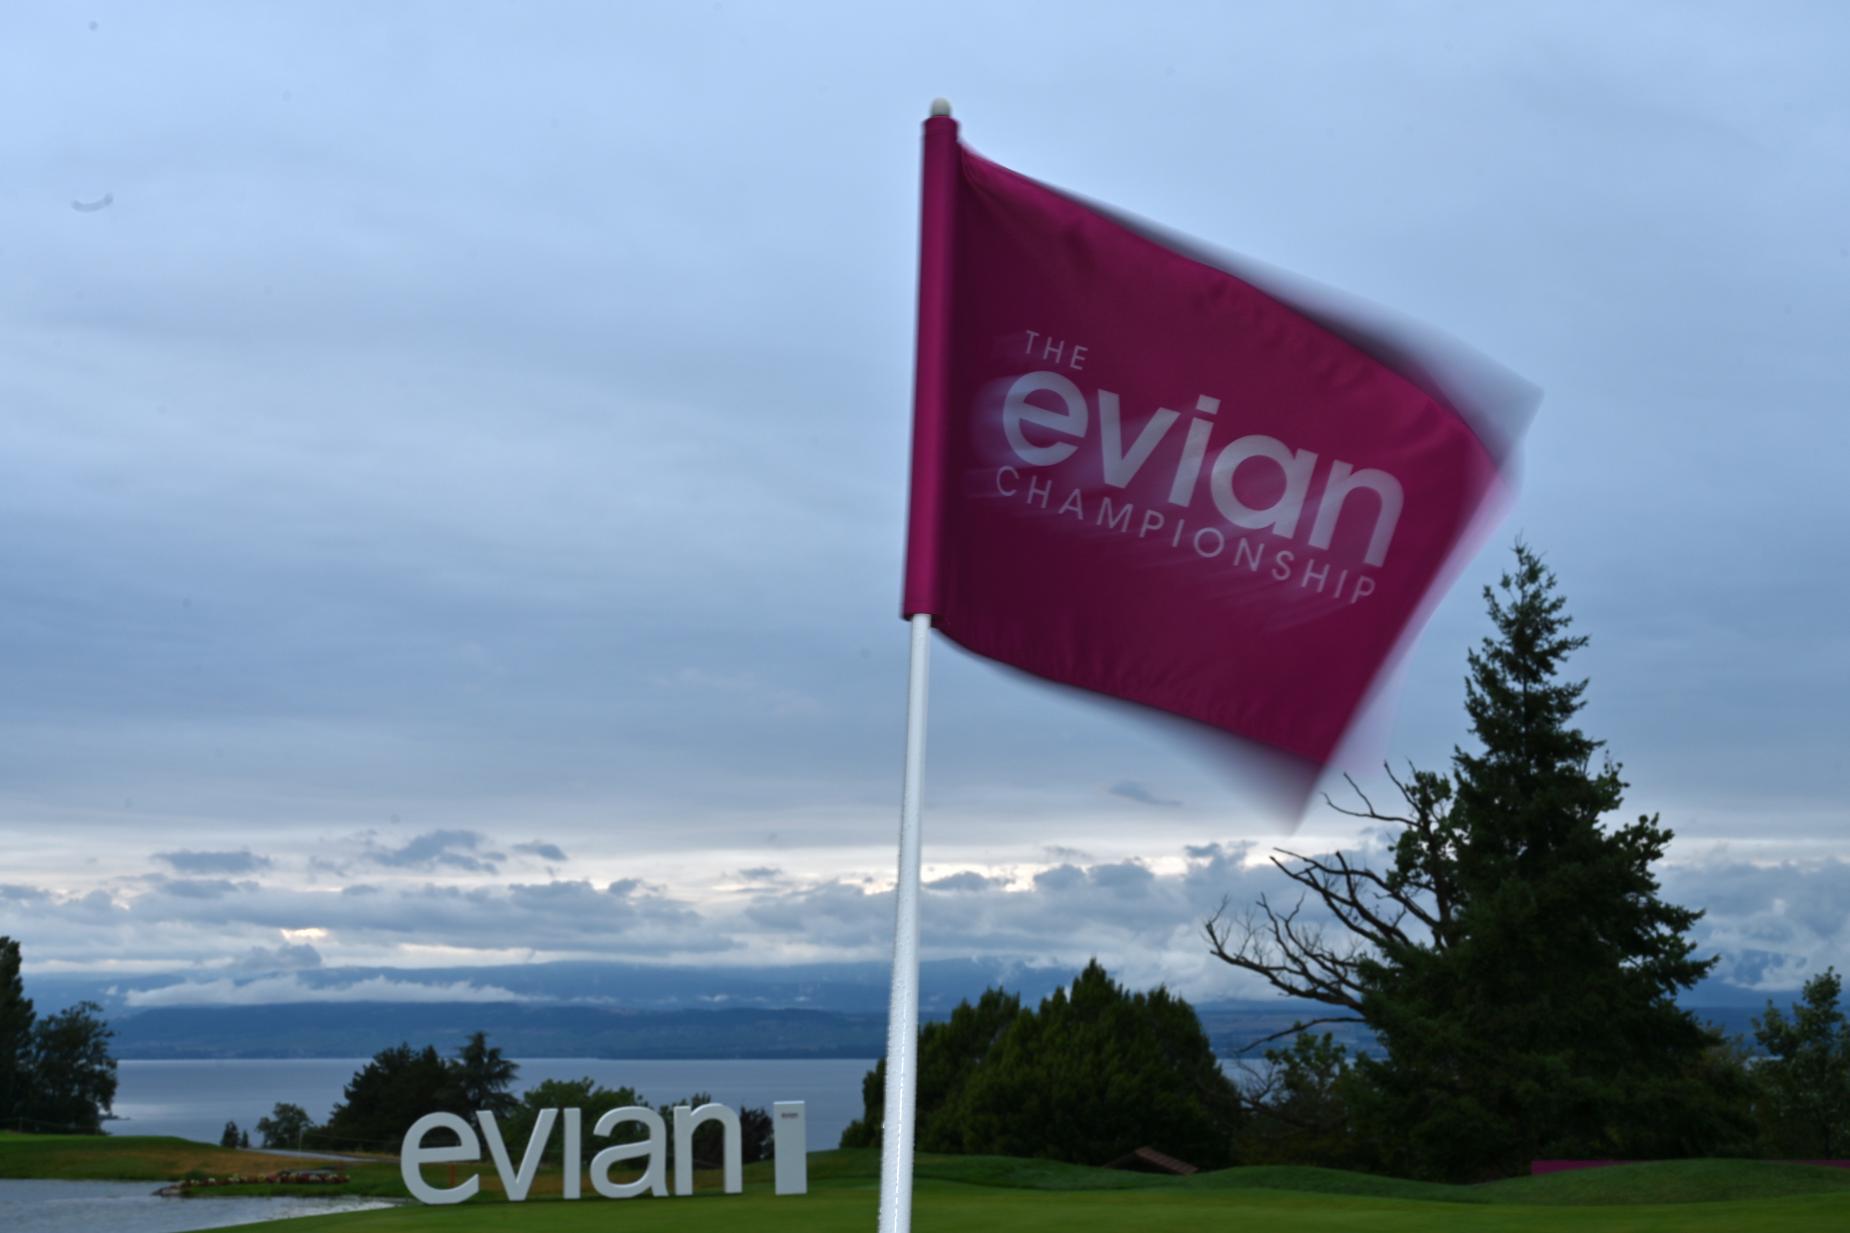 Evian Championship trở thành giải major nữ đầu tiên bị hủy trong mùa 2020